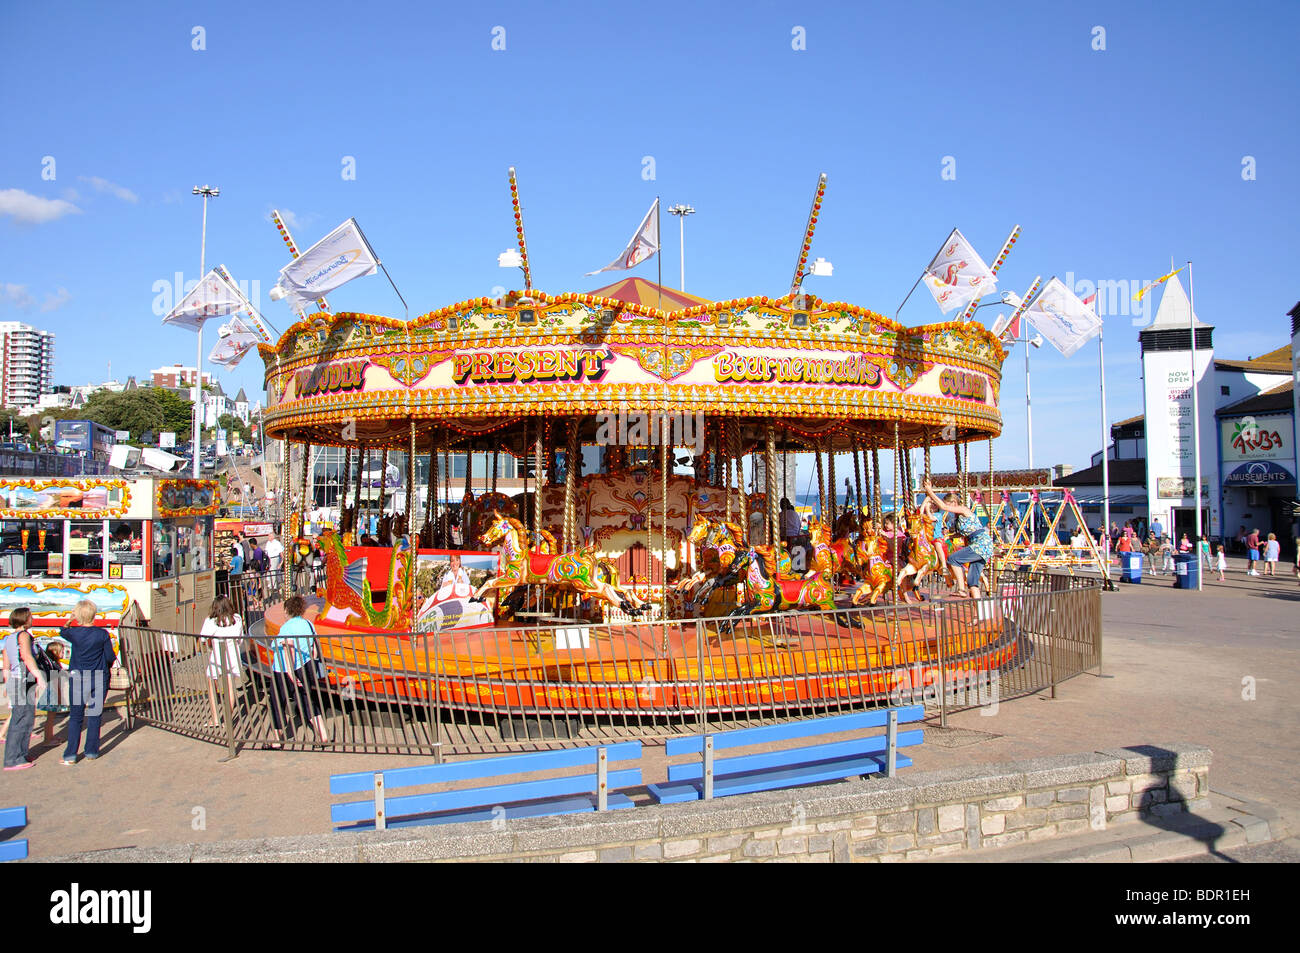 Seafront fairground carousel, Bournemouth, Dorset, England, United Kingdom Stock Photo